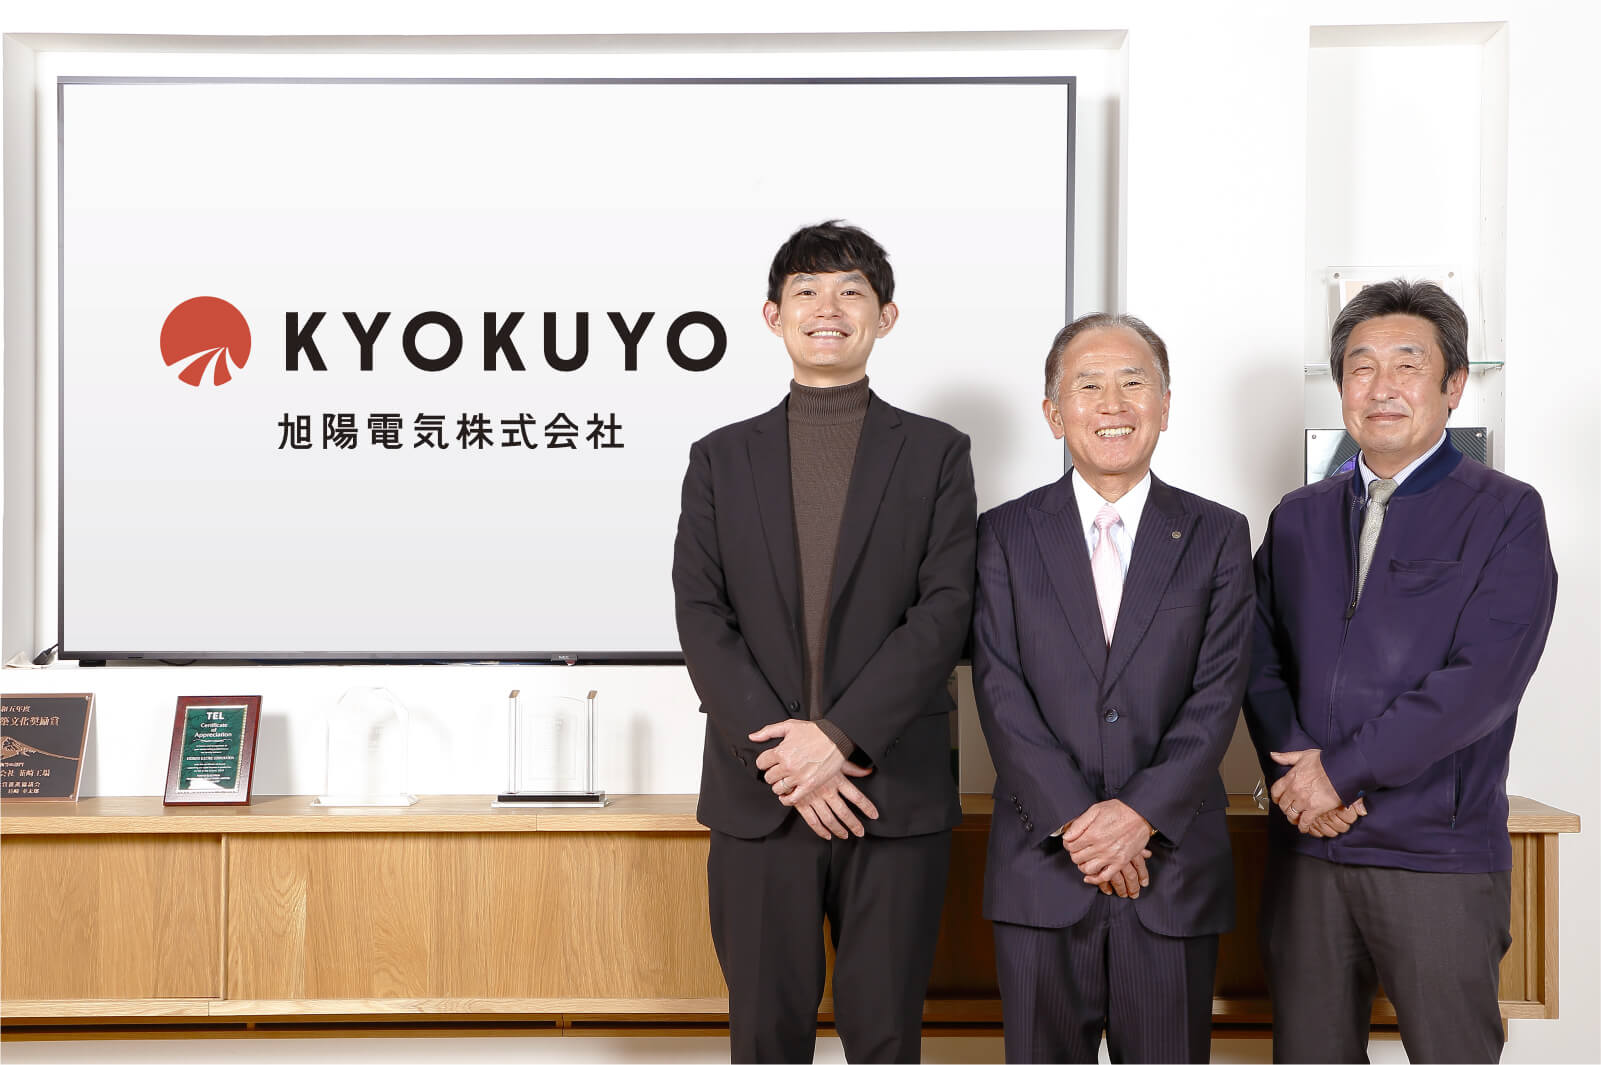 左から旭陽電気株式会社 金山雄一郎氏、長田幸夫氏、浅尾恵史氏の並ぶ写真。